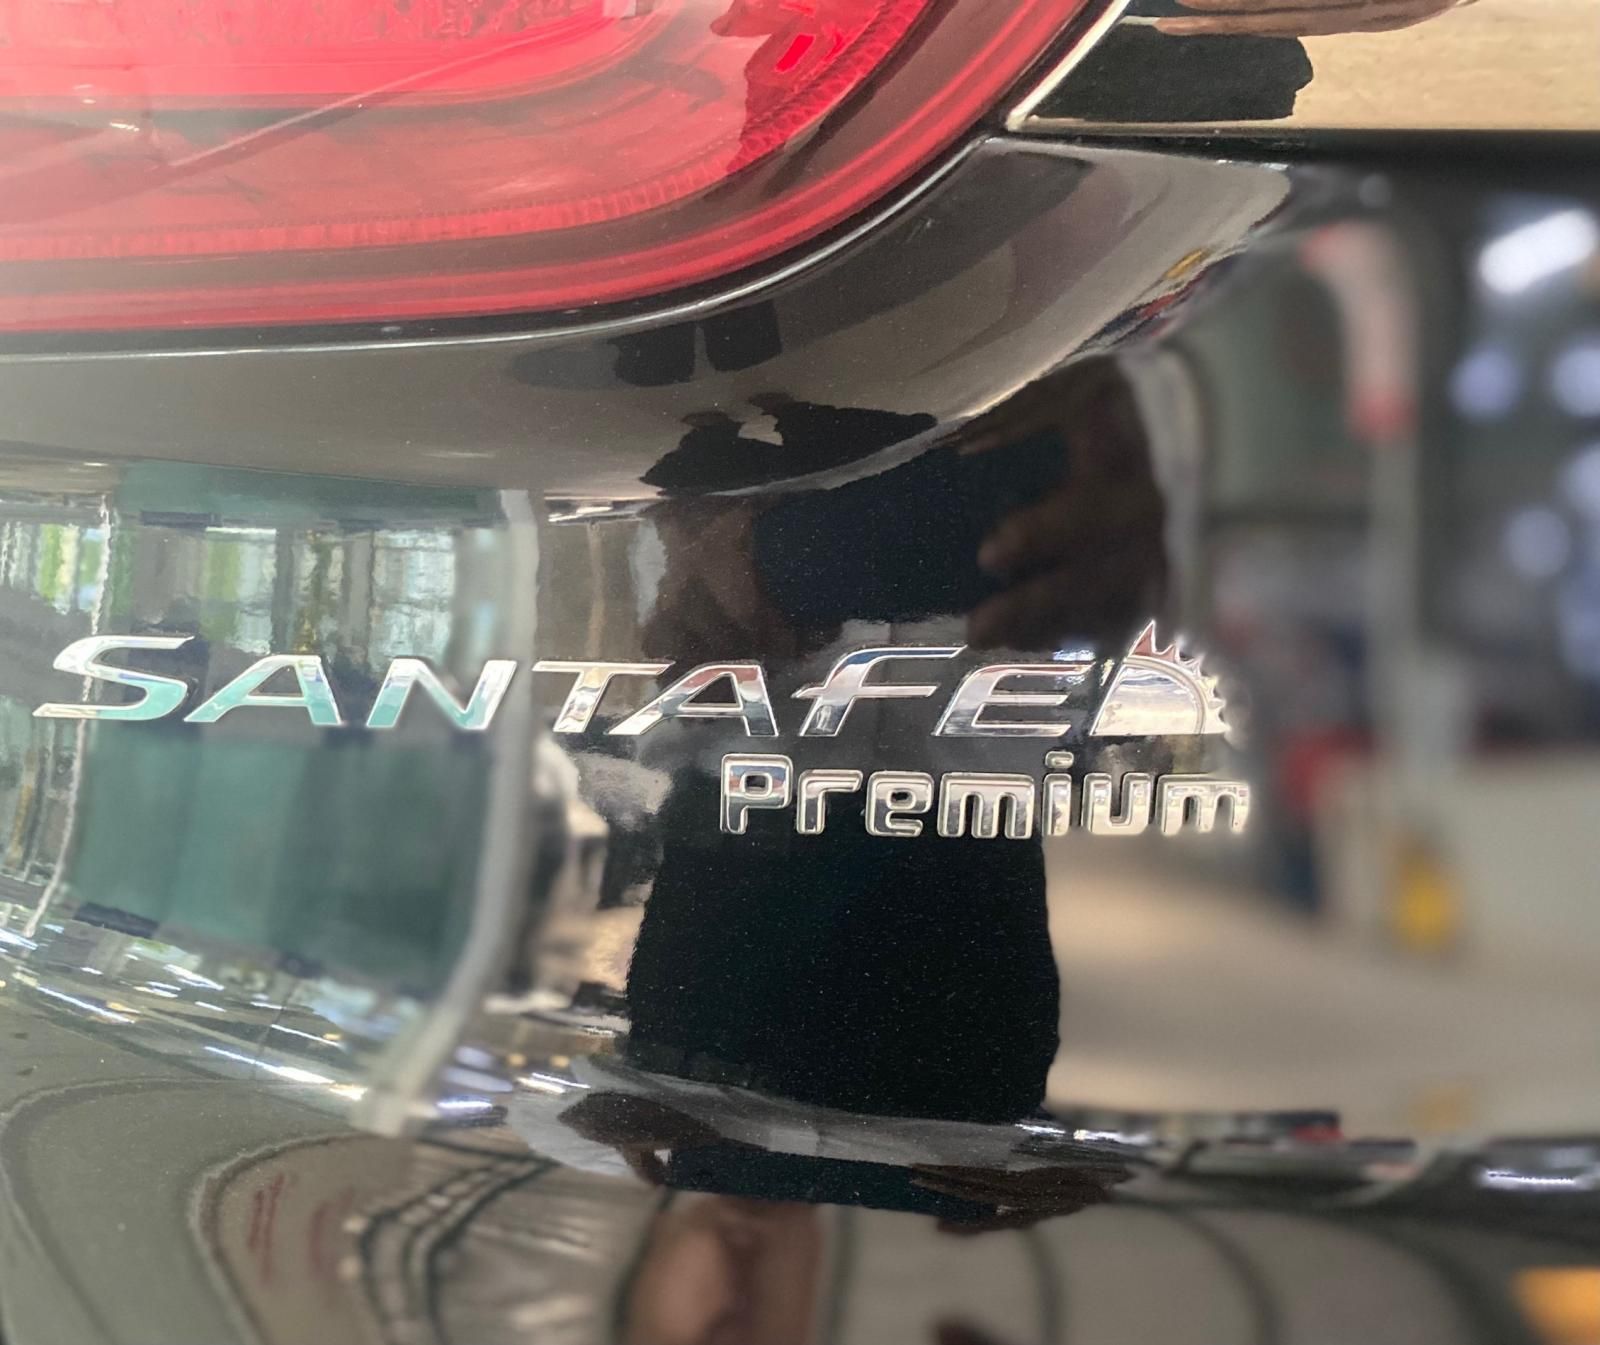 Hyundai Santa Fe 2020 - Full dầu-Xe bán tại hãng-Có bảo hành